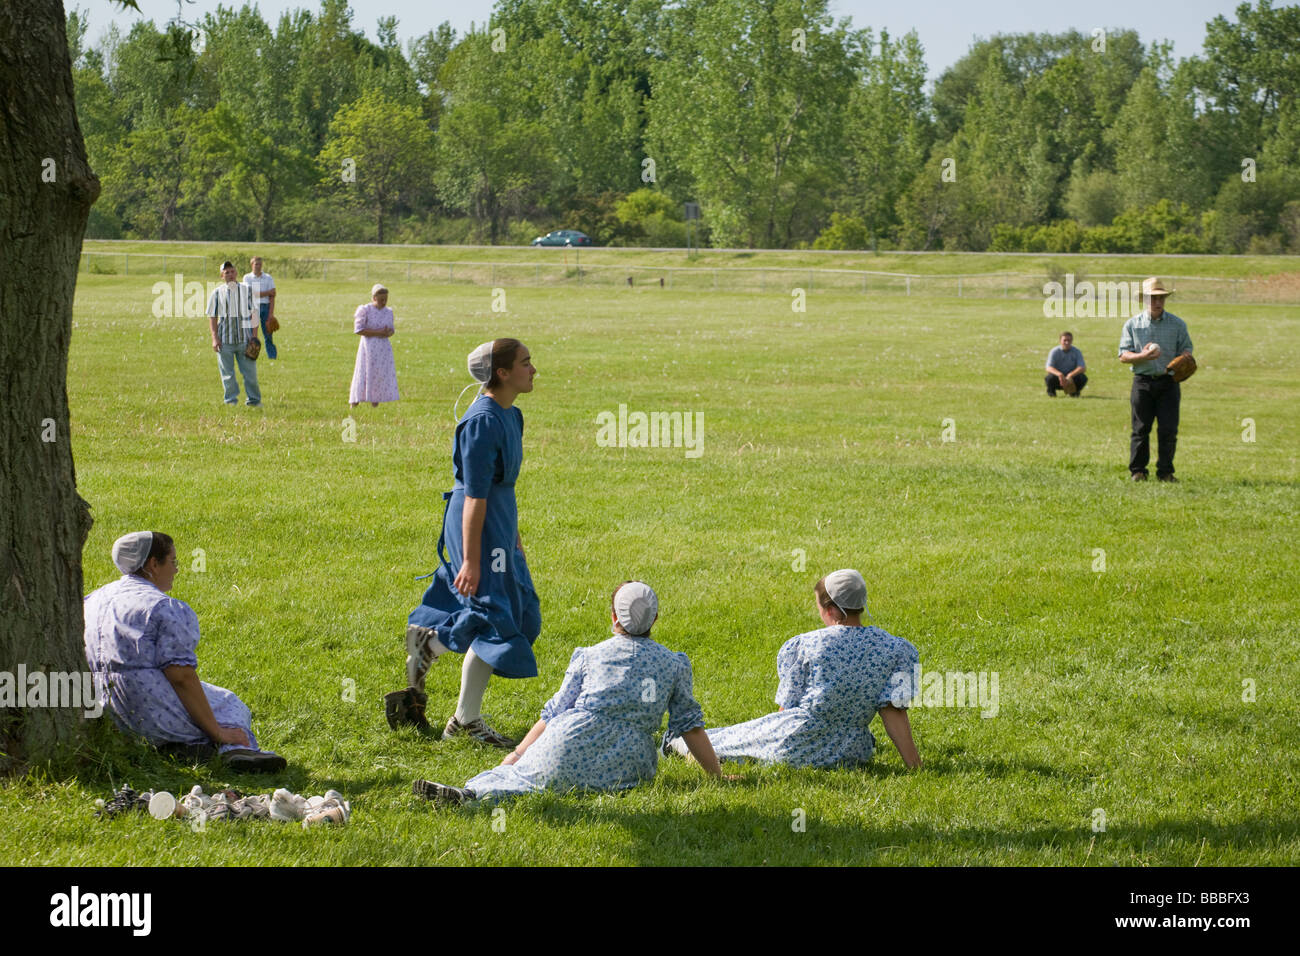 Les jeunes hommes et femmes mennonites jouer softball Dimanche au parc Genève New York Ontario Comté Finger Lakes Banque D'Images